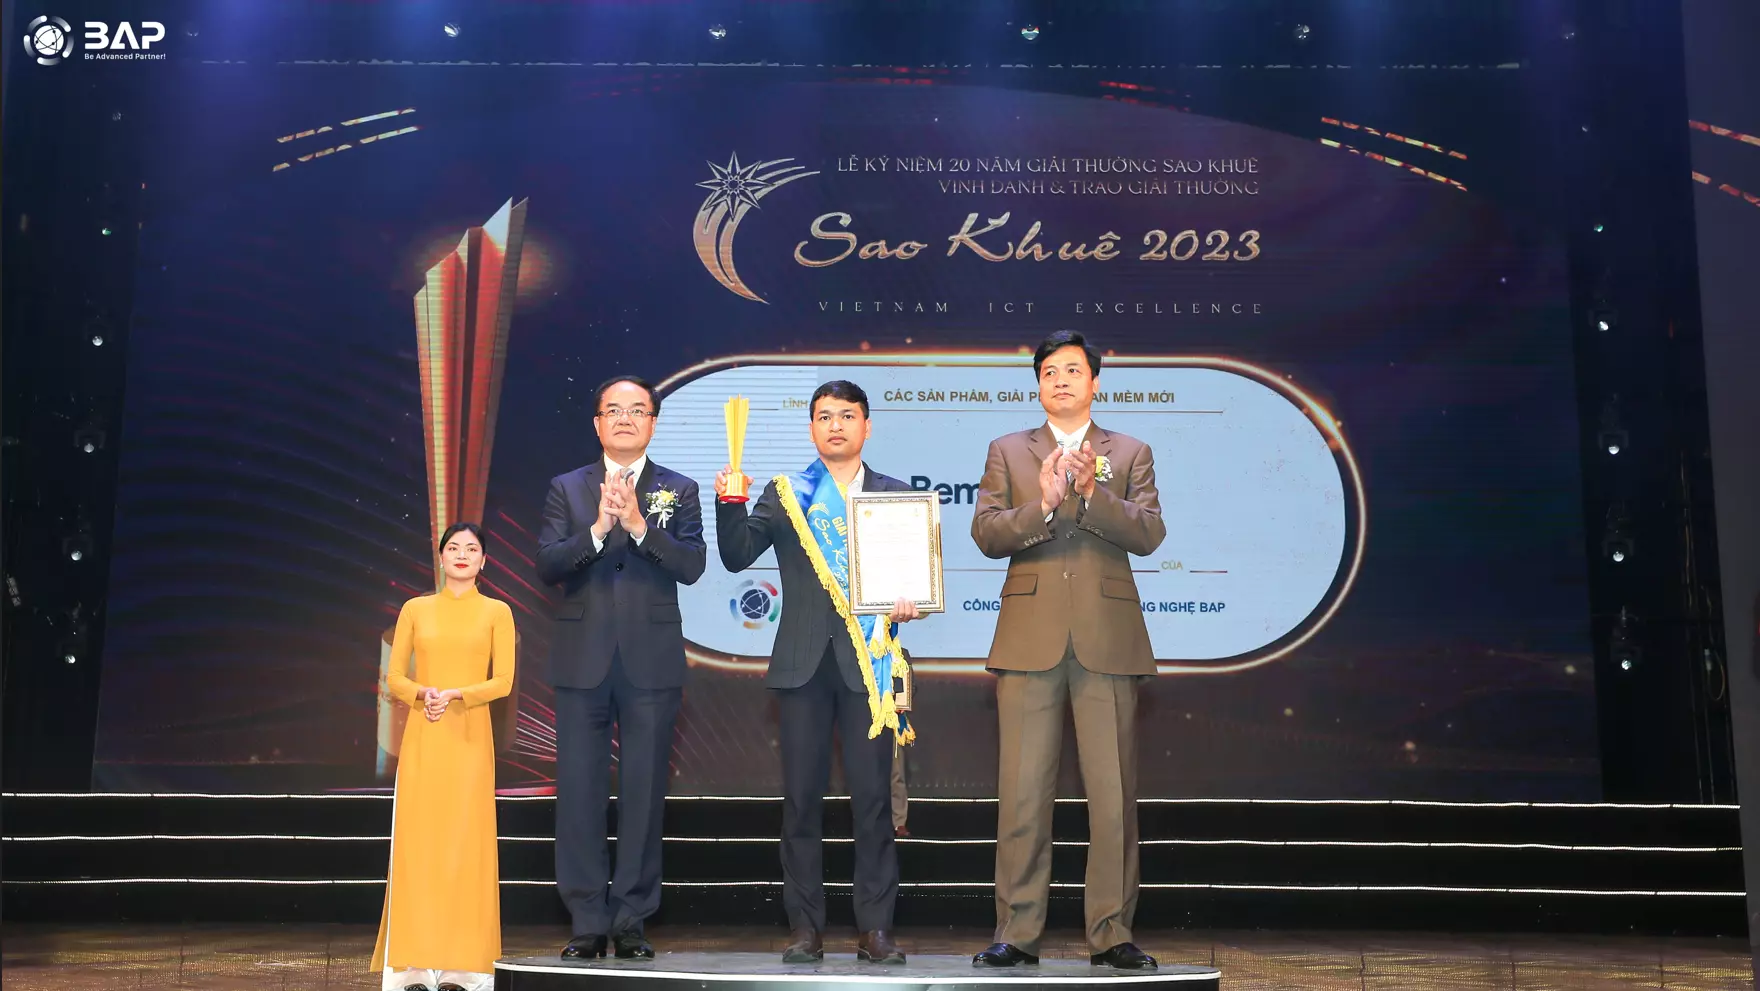 BAPのBEMO CLOUD製品がSAO KHUE AWARD 2023で表彰されました。